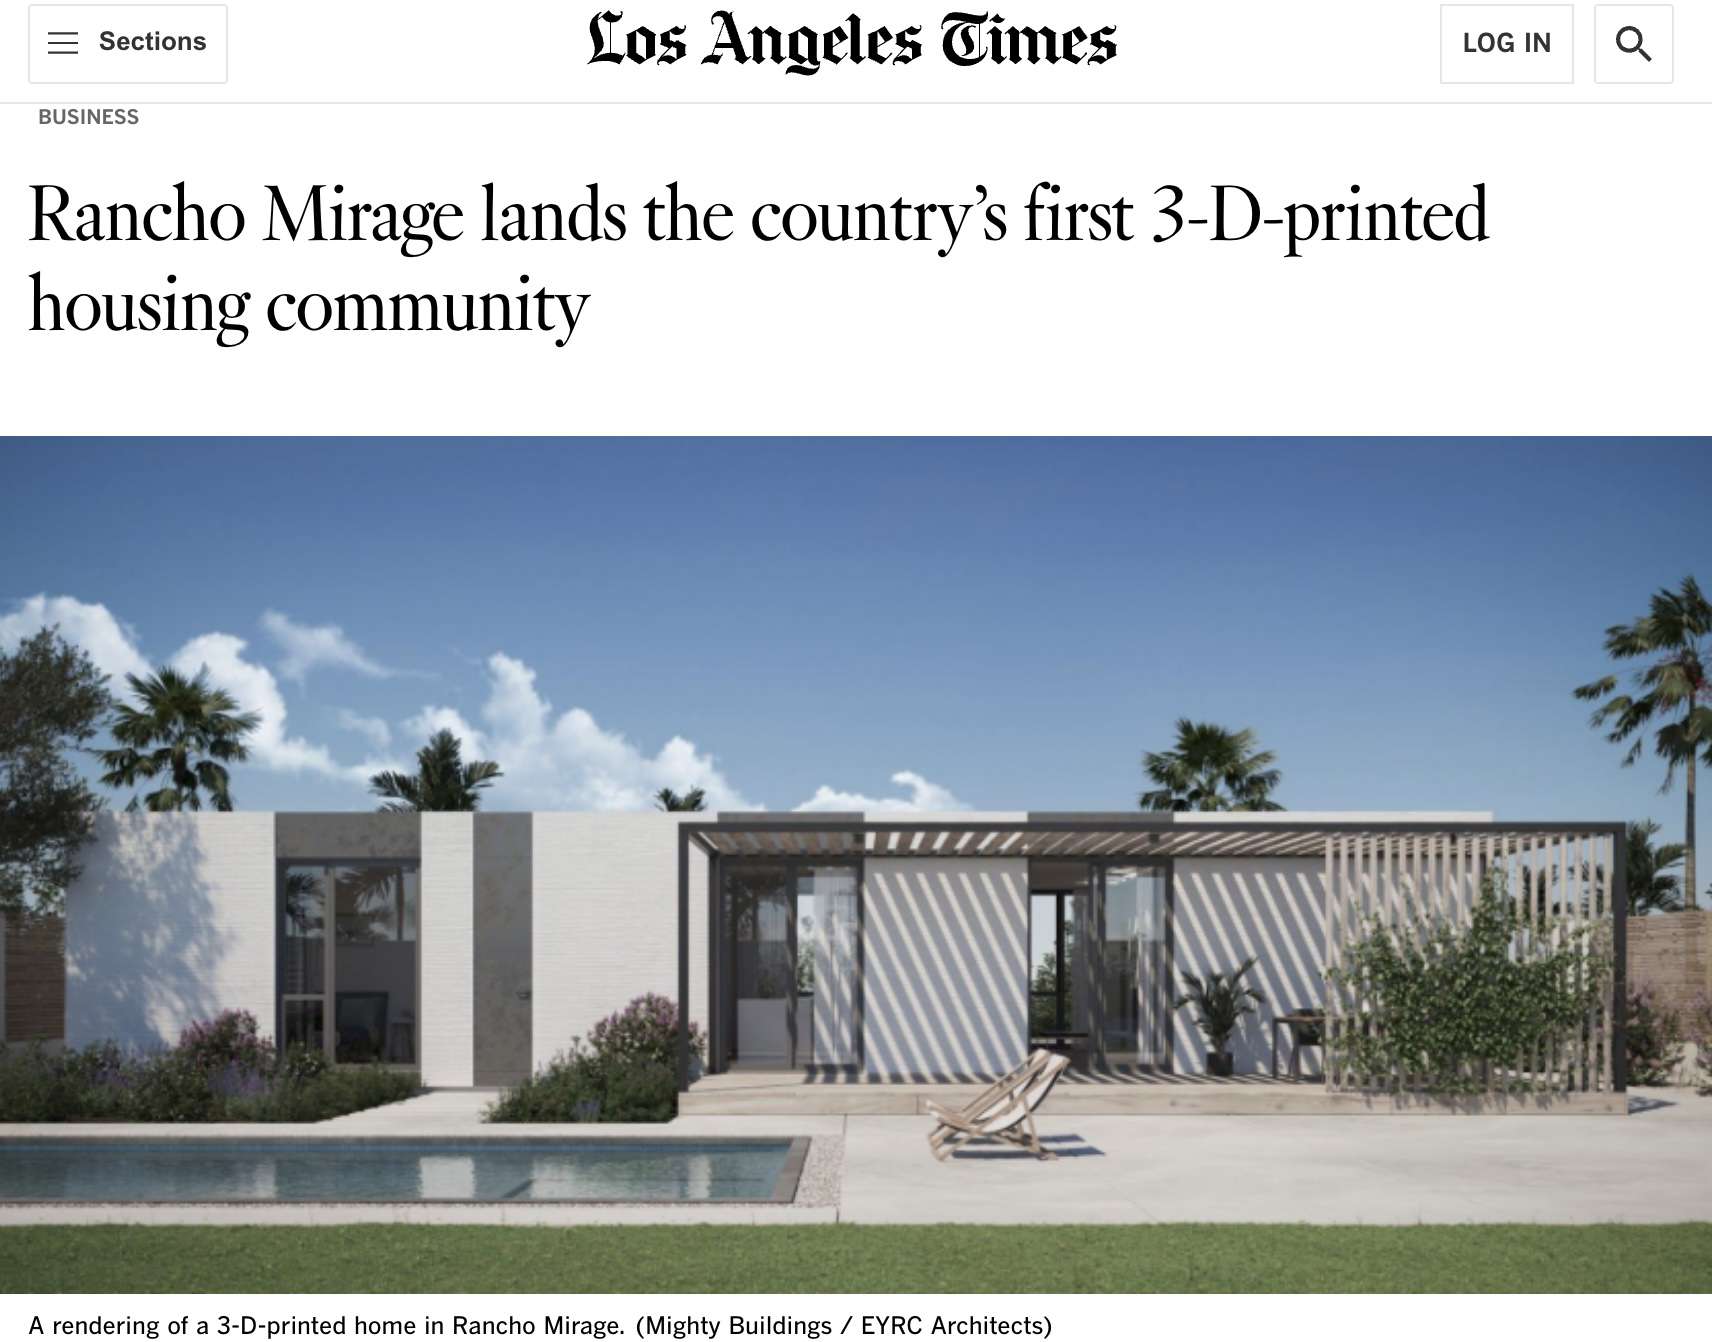 洛杉矶时报的屏幕截图